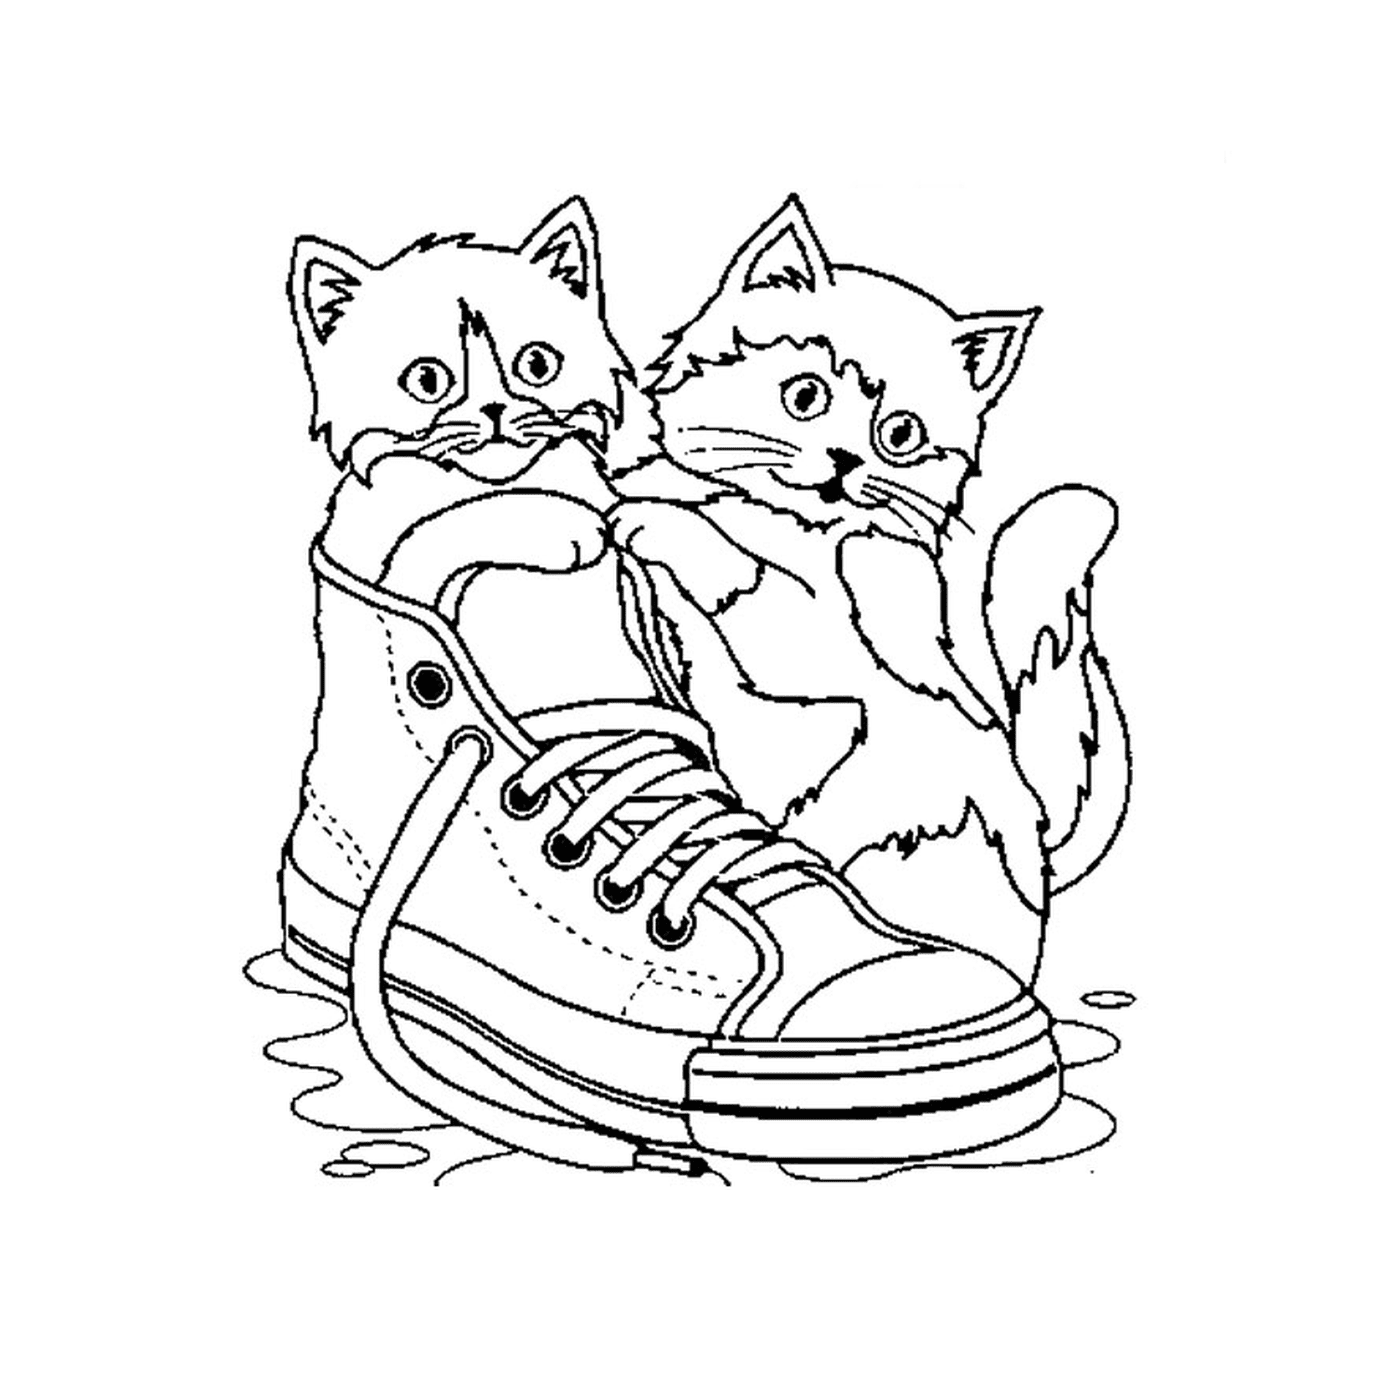  Dos gatos sentados en un zapato en el agua 